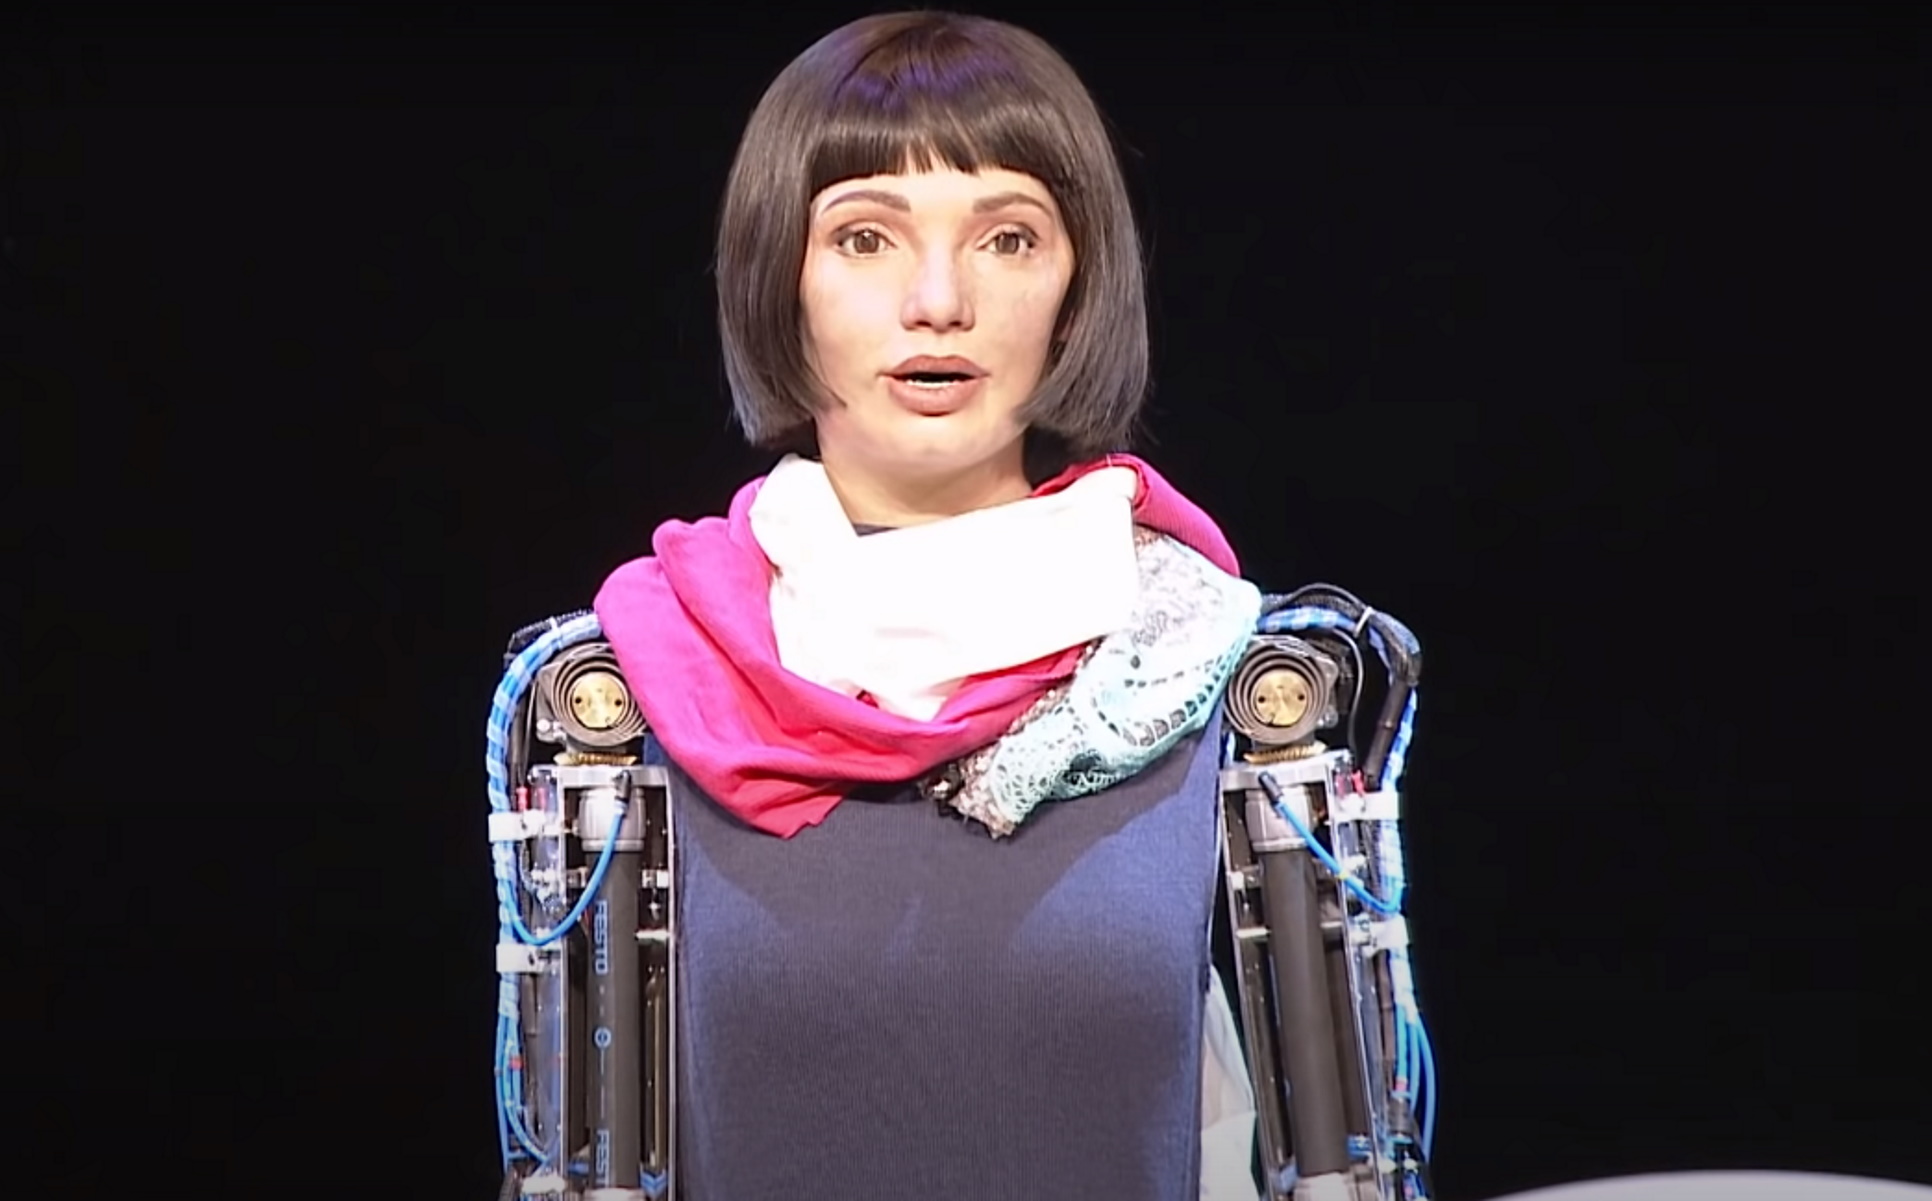 Λονδίνο: Αυτό είναι το πρώτο ανθρωποειδές ρομπότ – καλλιτέχνης στον κόσμο